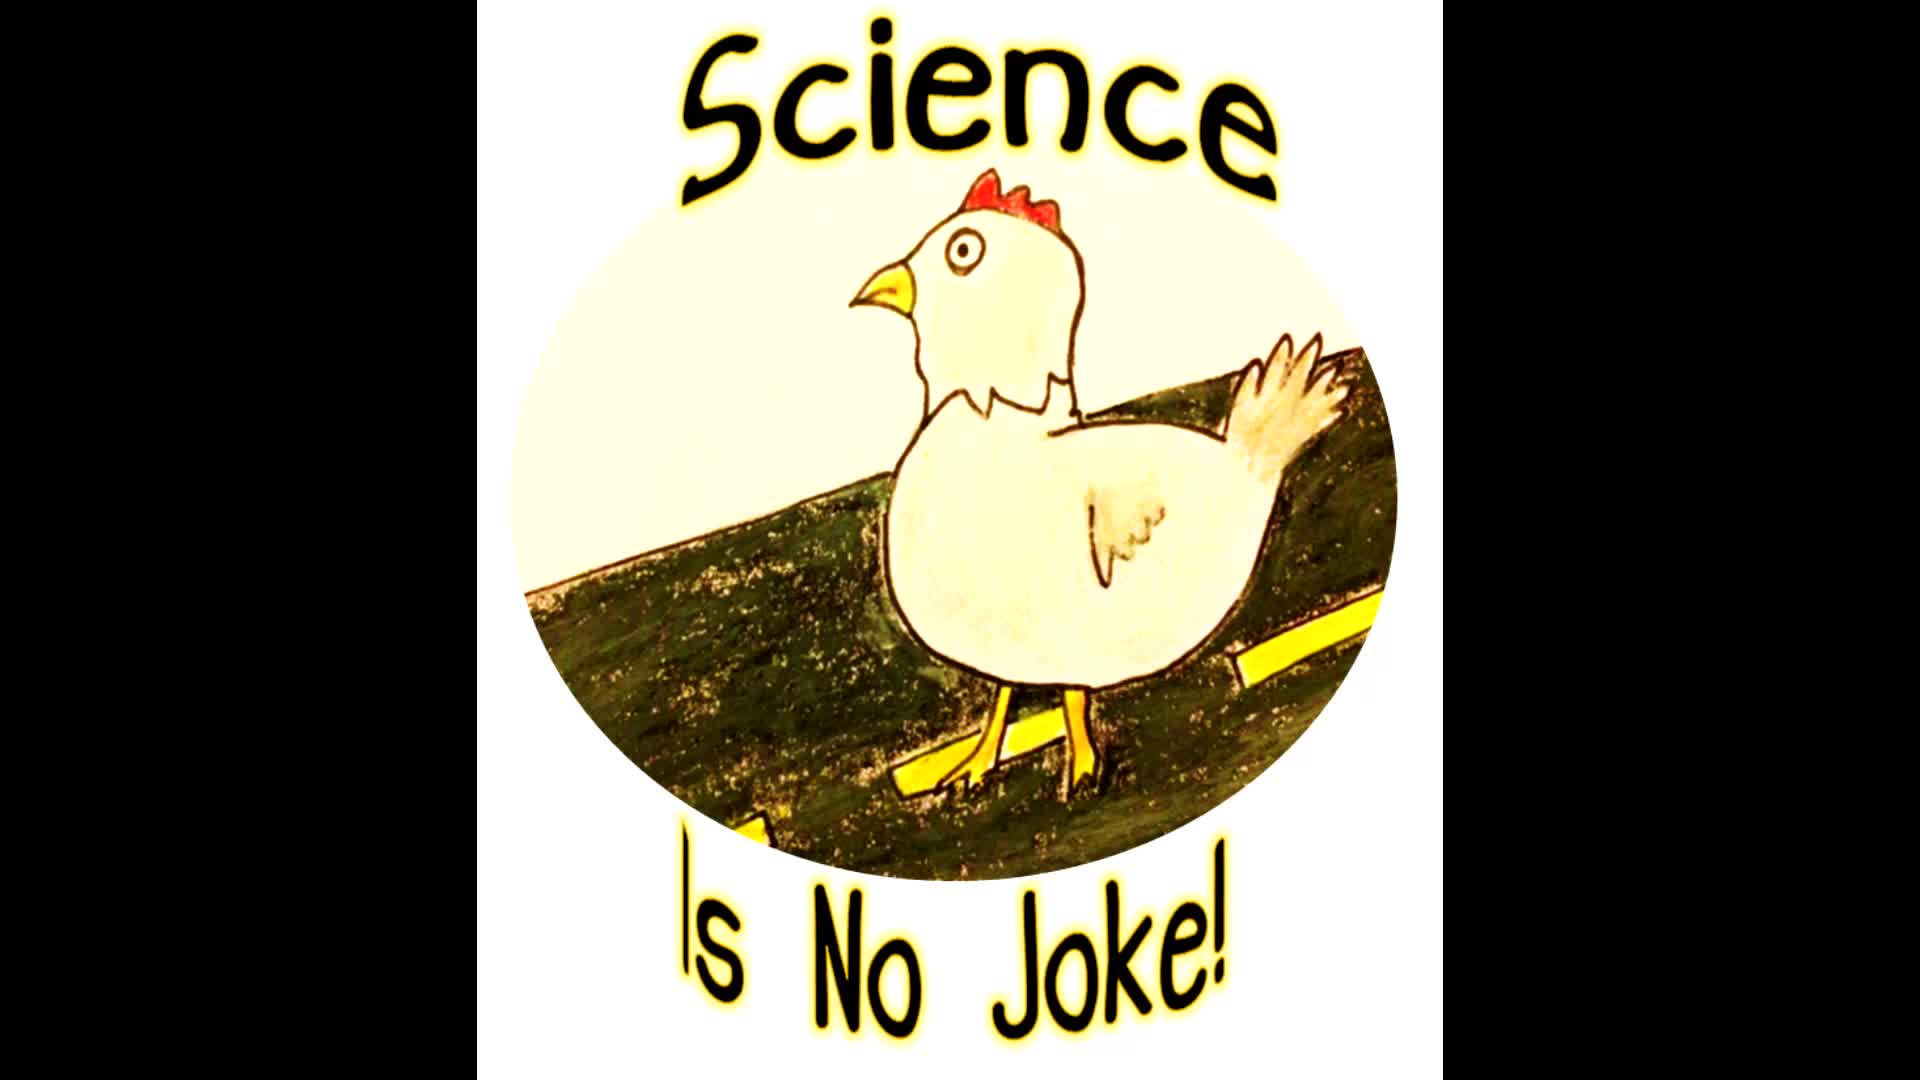 "Science Is No Joke!"